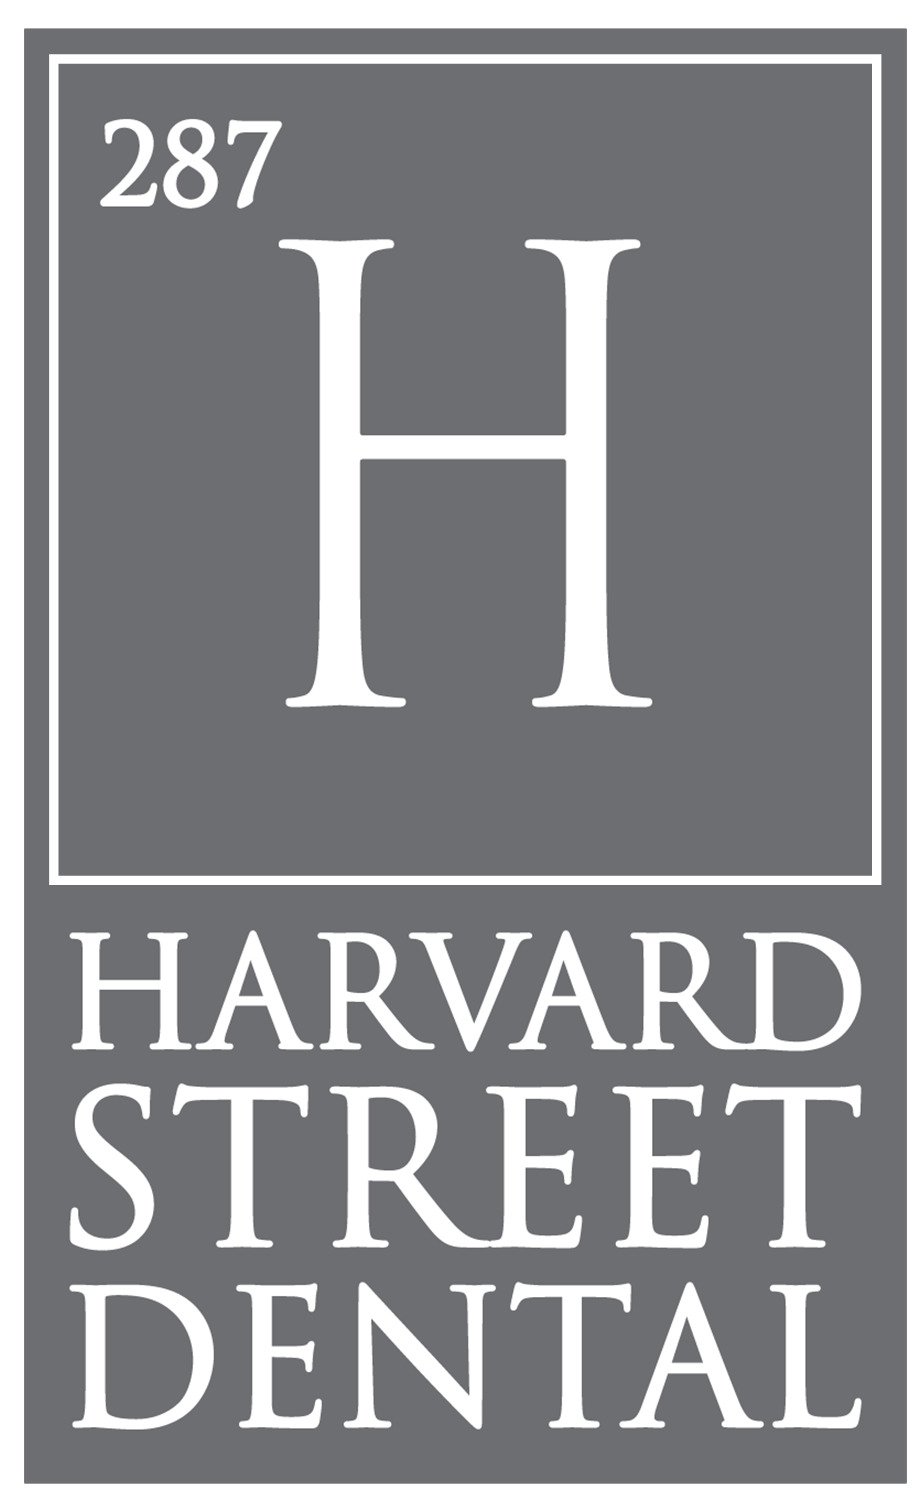 Harvard Street Dental.jpg